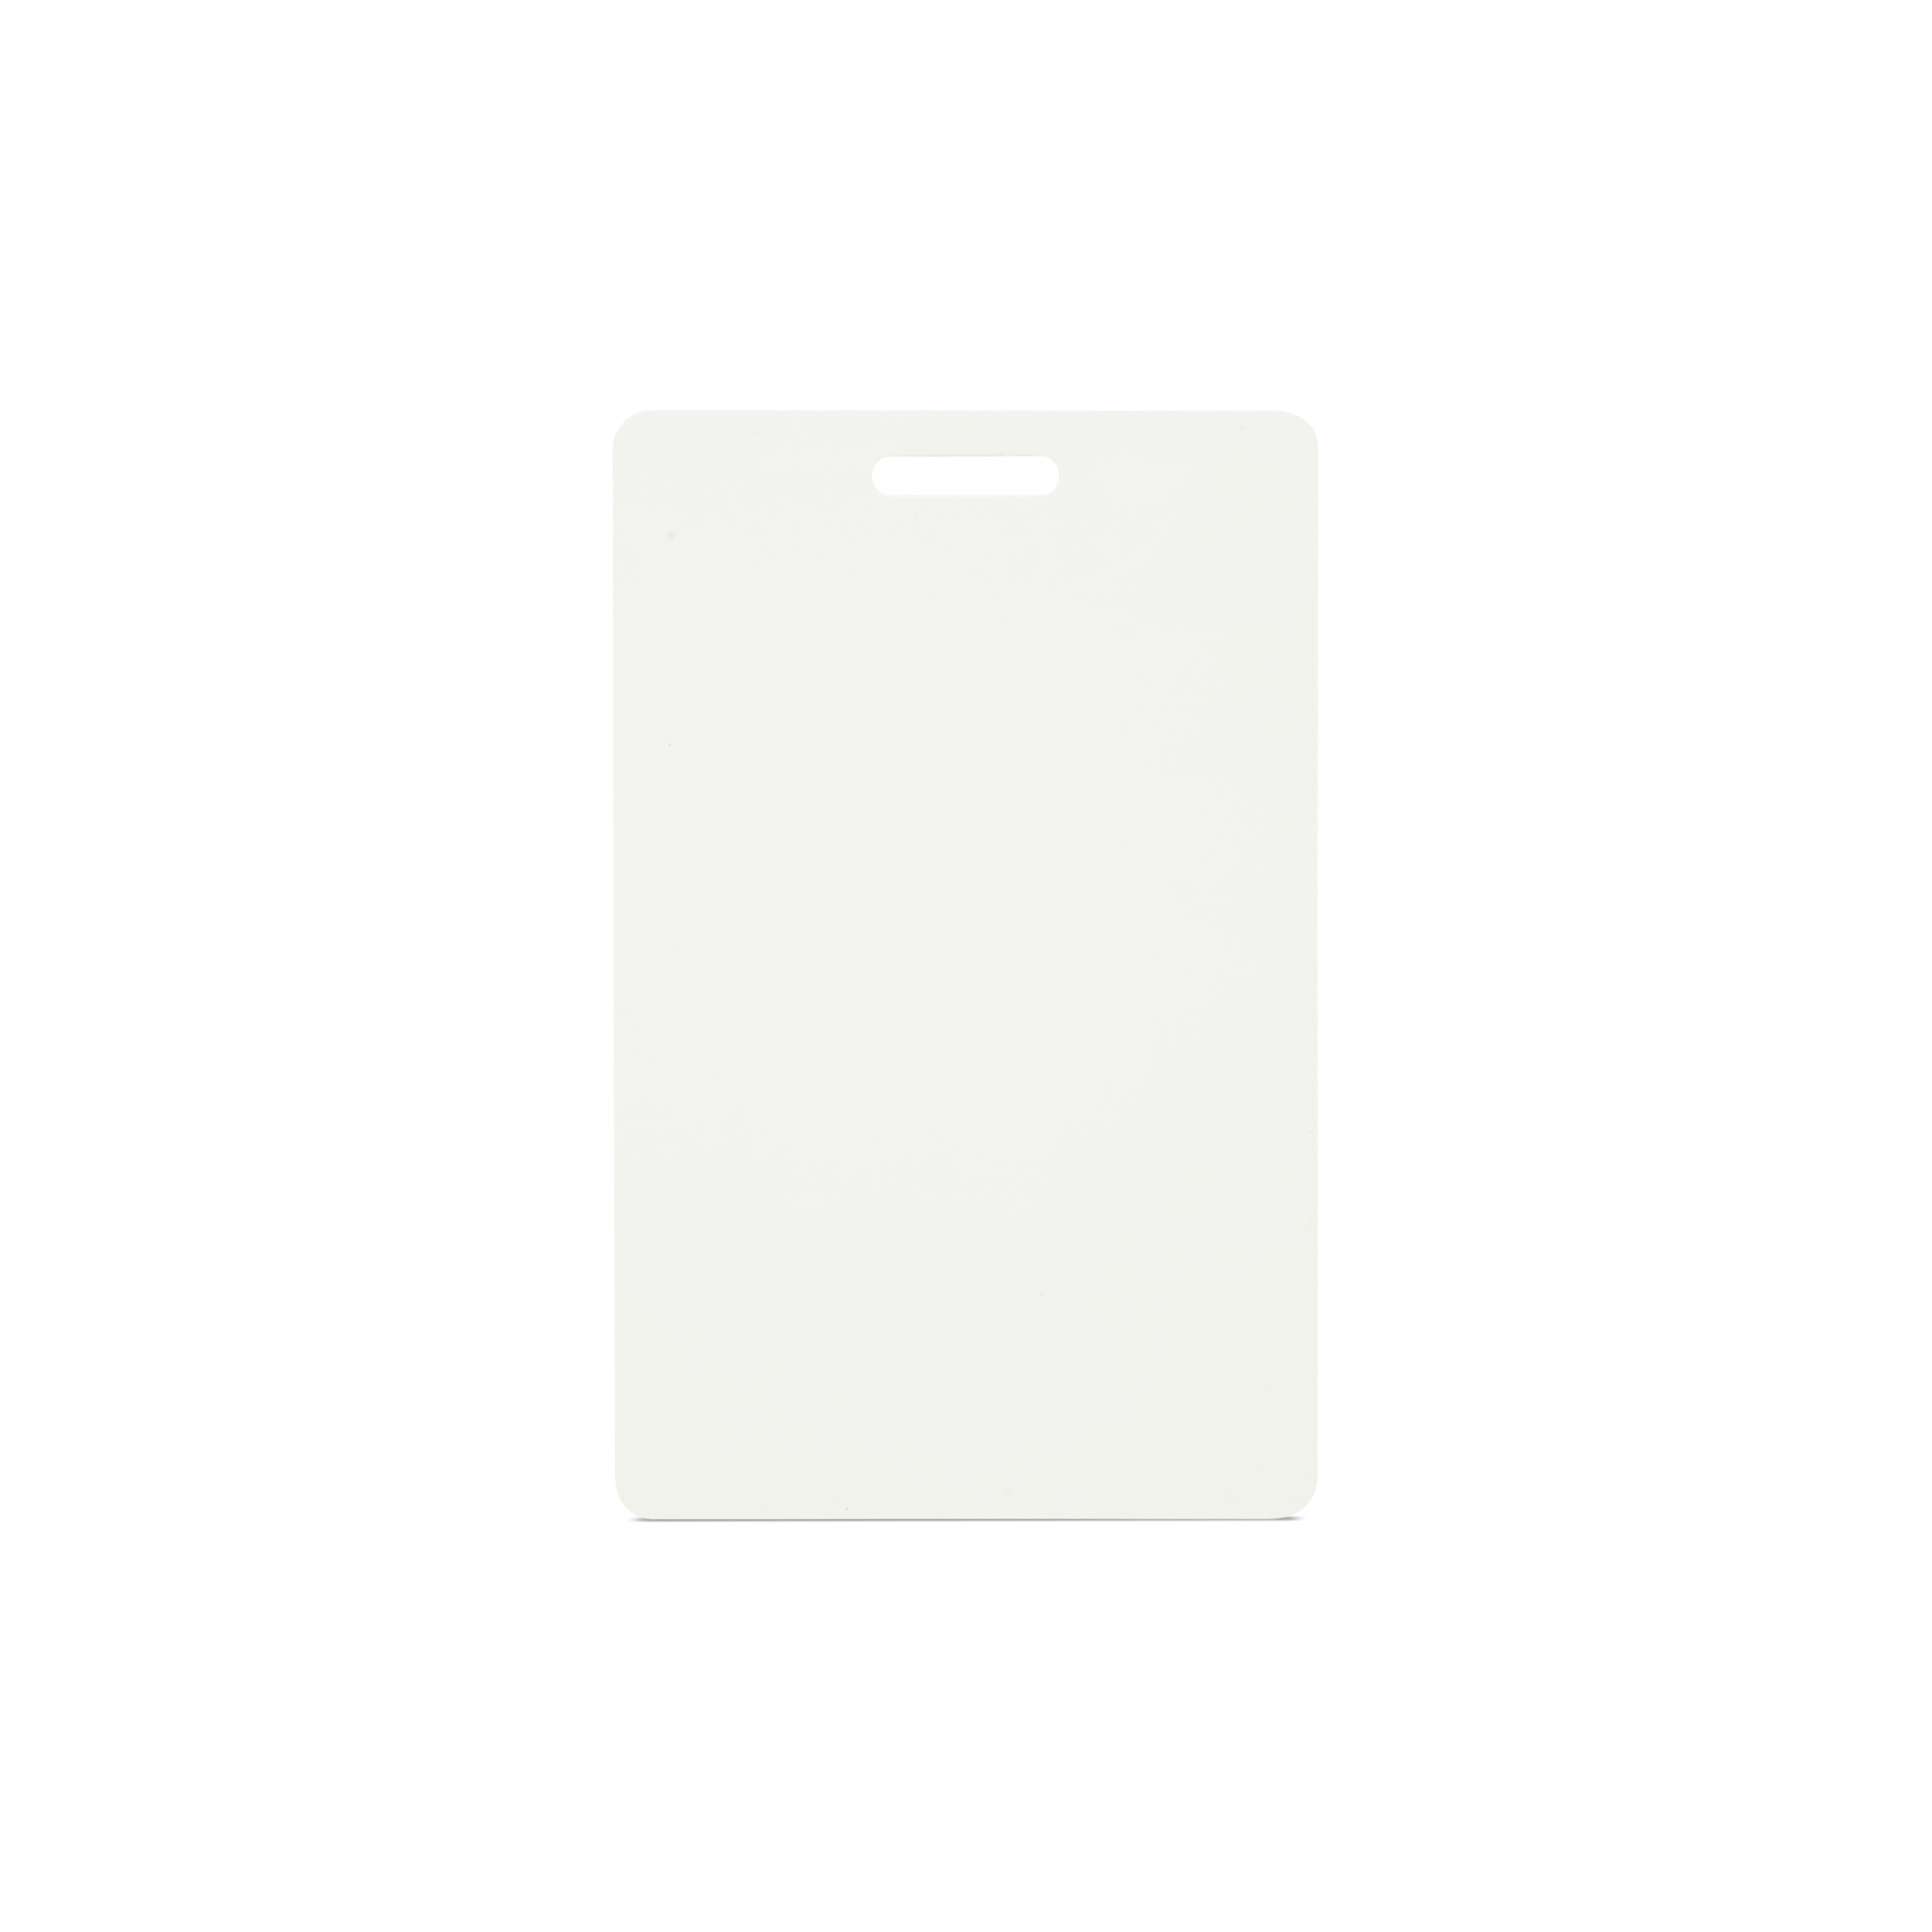 NFC Karte PVC - 85,6 x 54 mm - NTAG213 - 180 Byte - weiß - Hochformat mit Schlitz